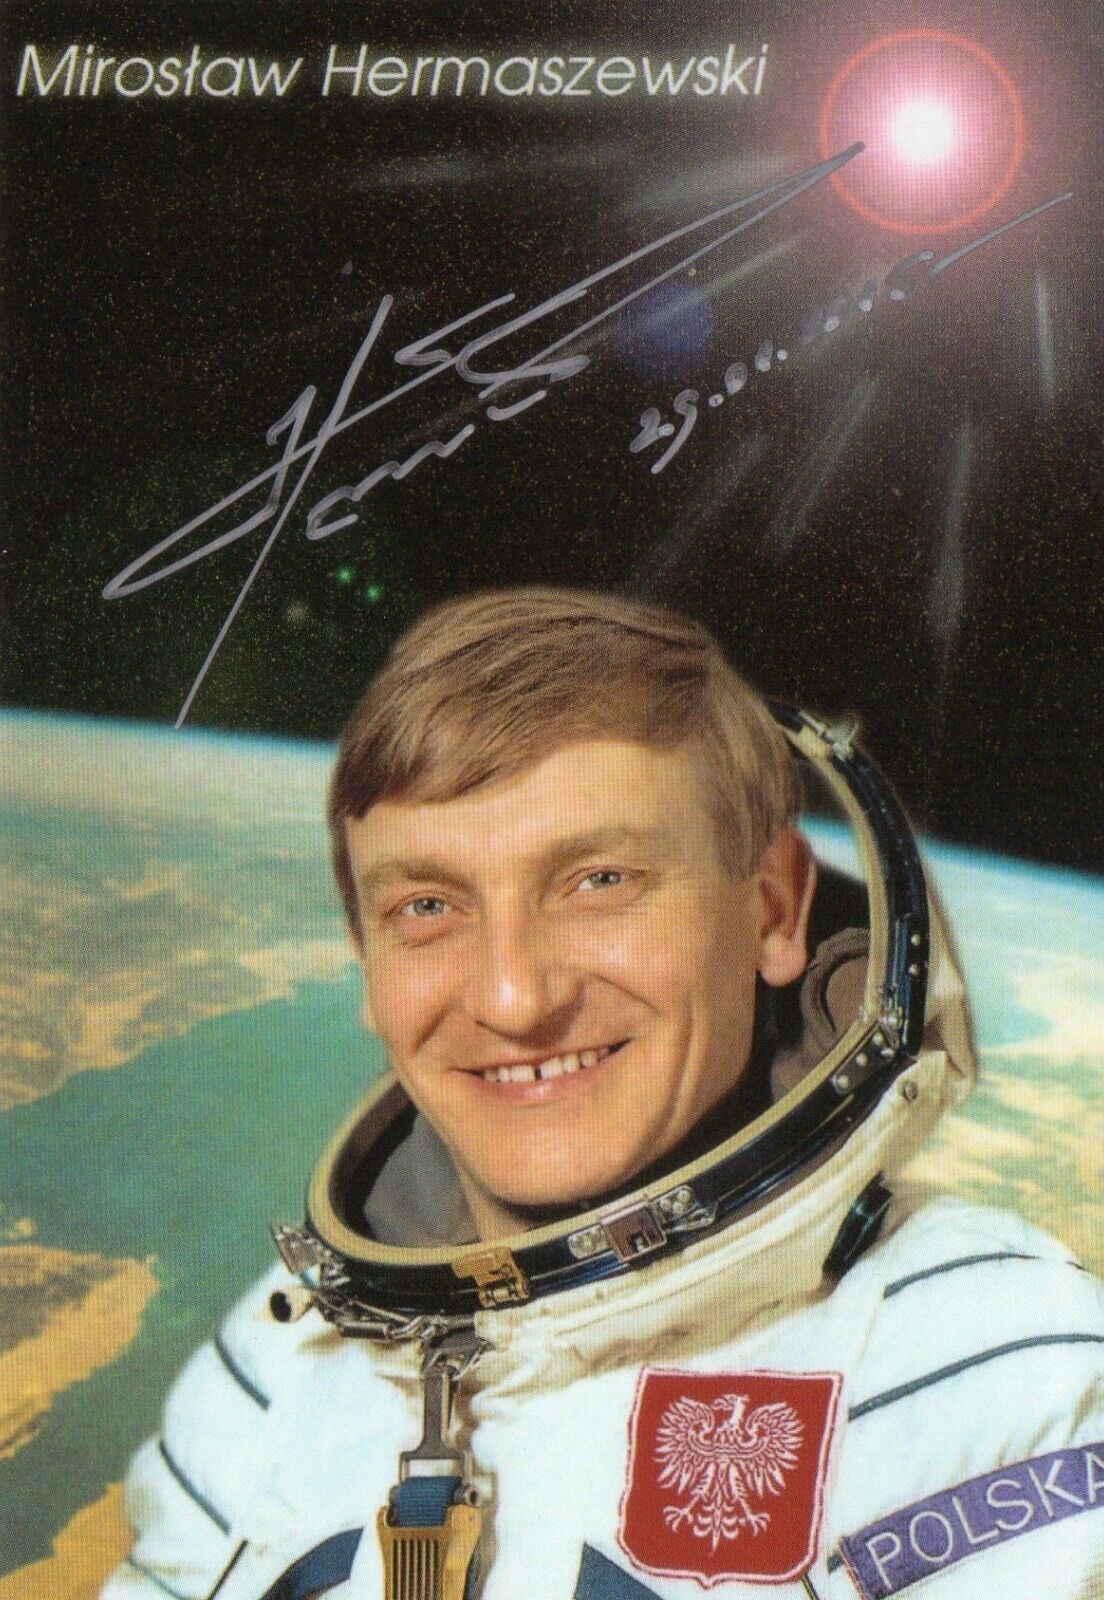 4x6 Original Autographed Photo of Polish Cosmonaut Mirosław Hermaszewski